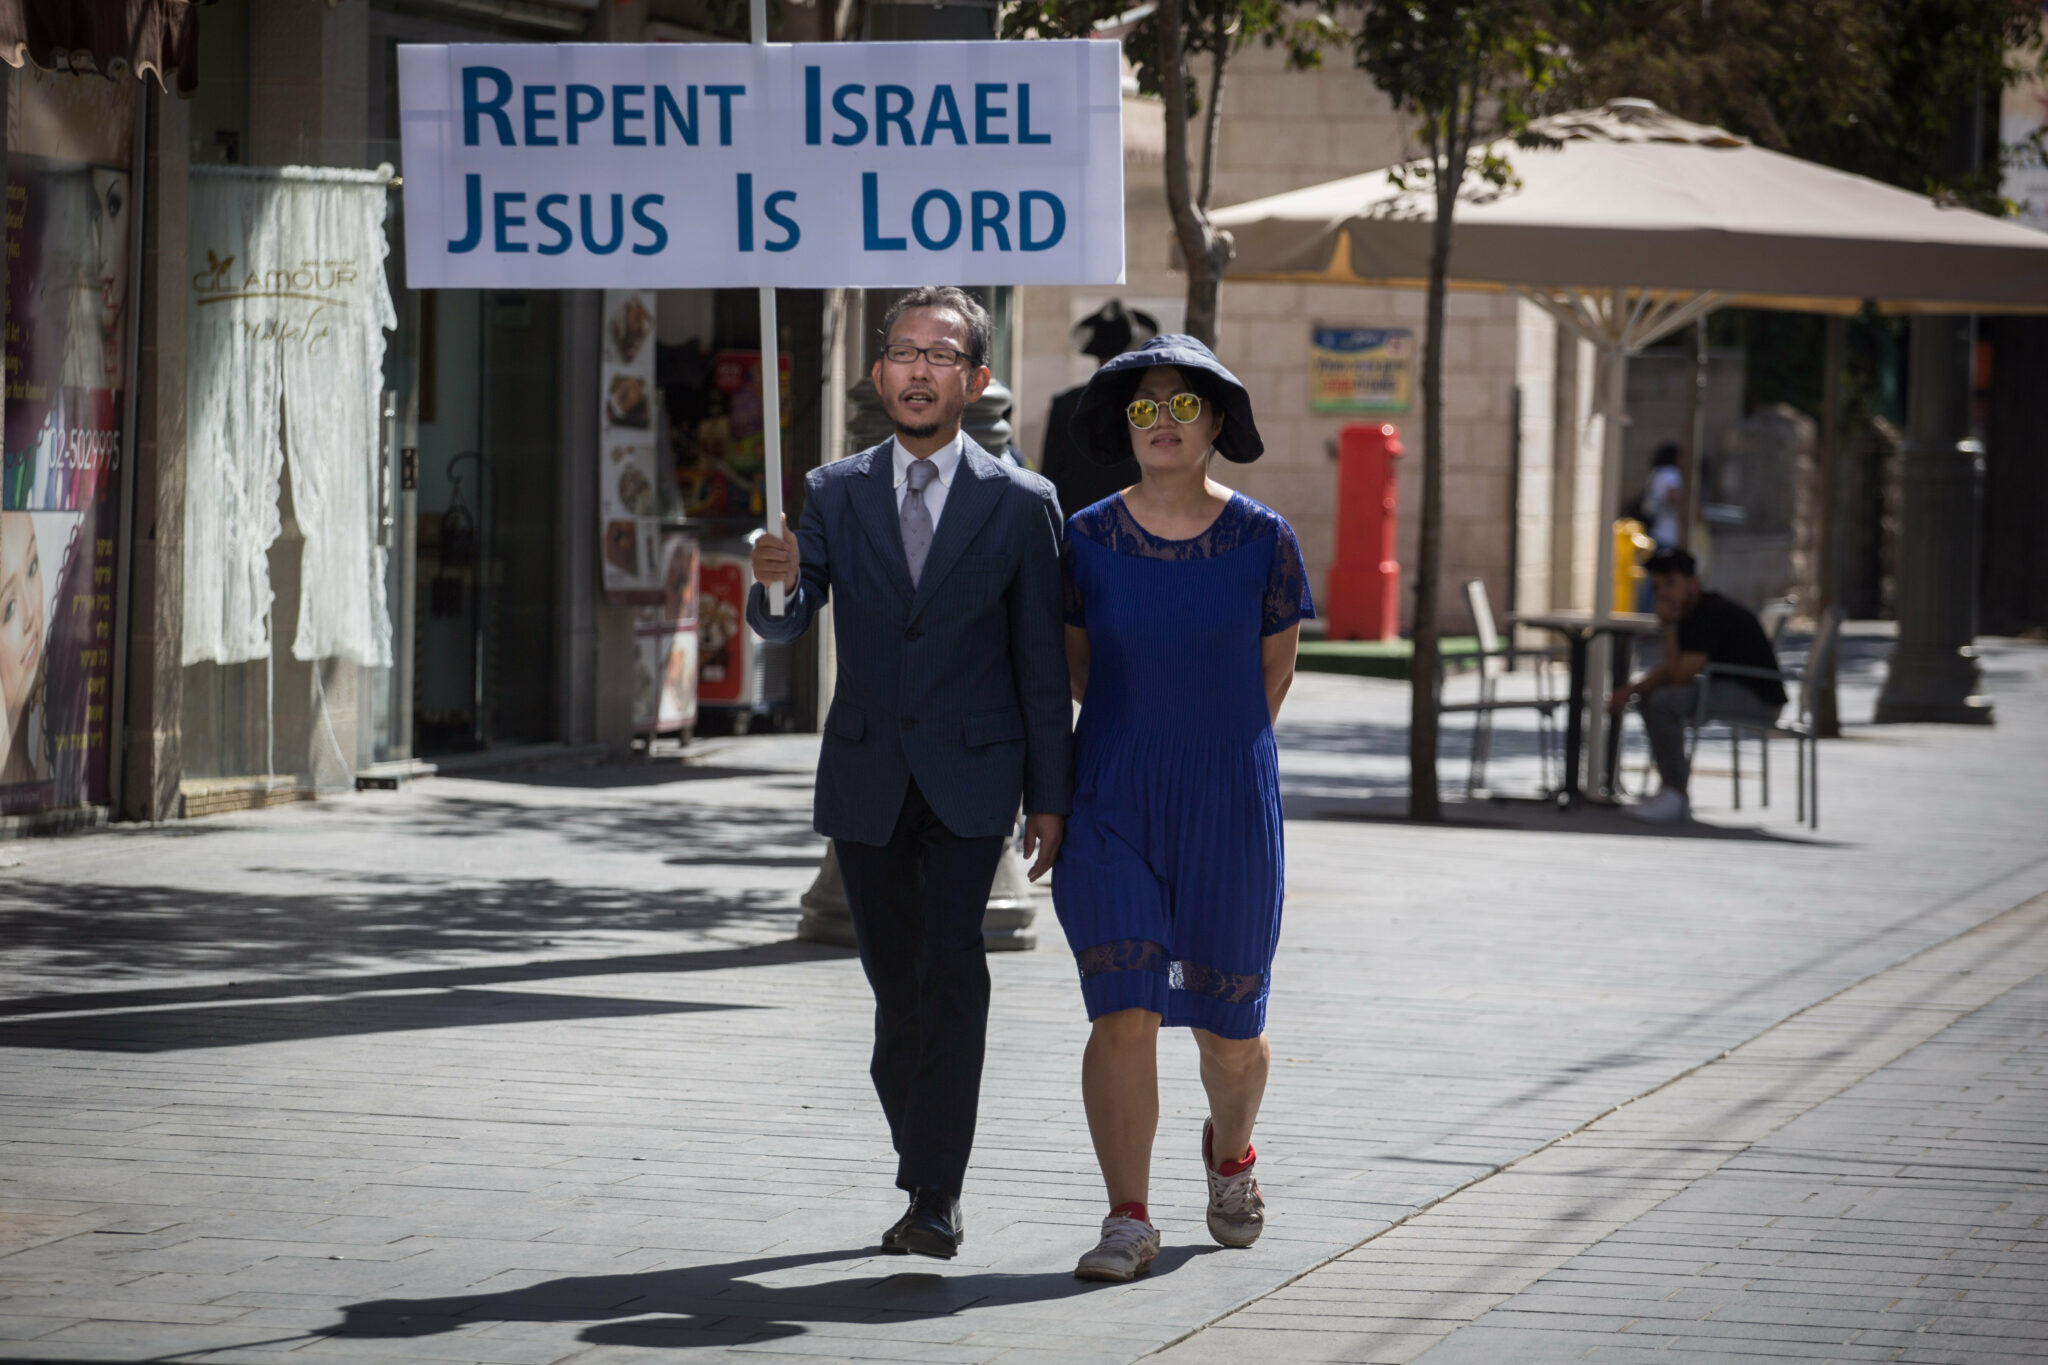 LE PROJET DE LOI CONTRE LA MISSION EN ISRAËL SUSCITE LA CONTROVERSE. LES MILITANTS JUIFS ET CHRÉTIENS INTERVIENNENT